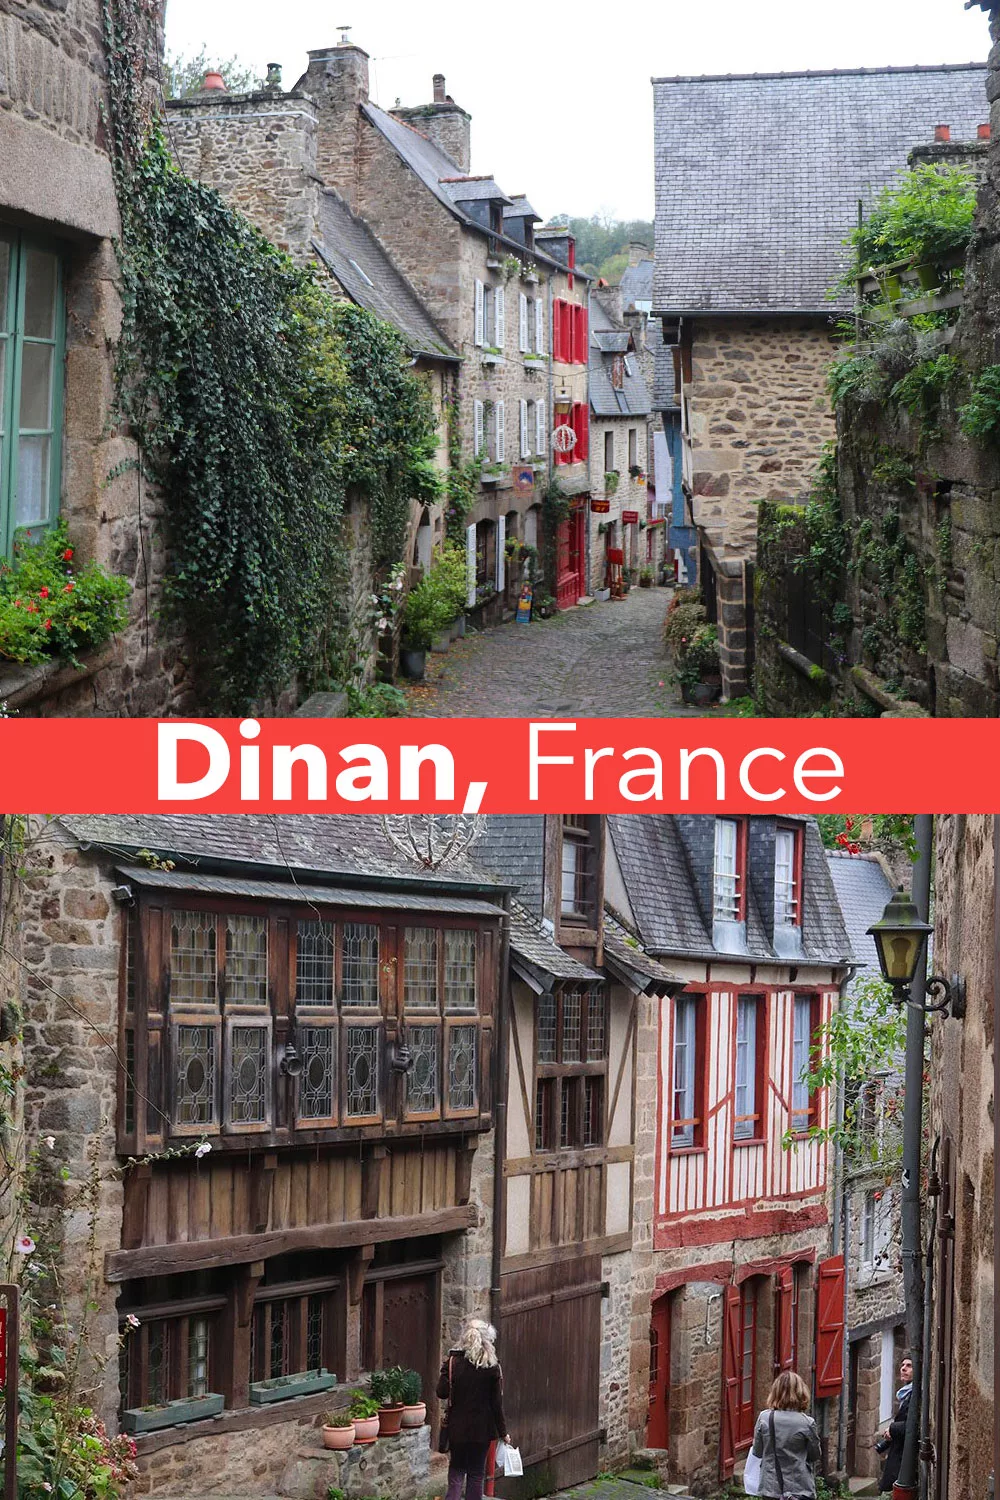 Dinan, France